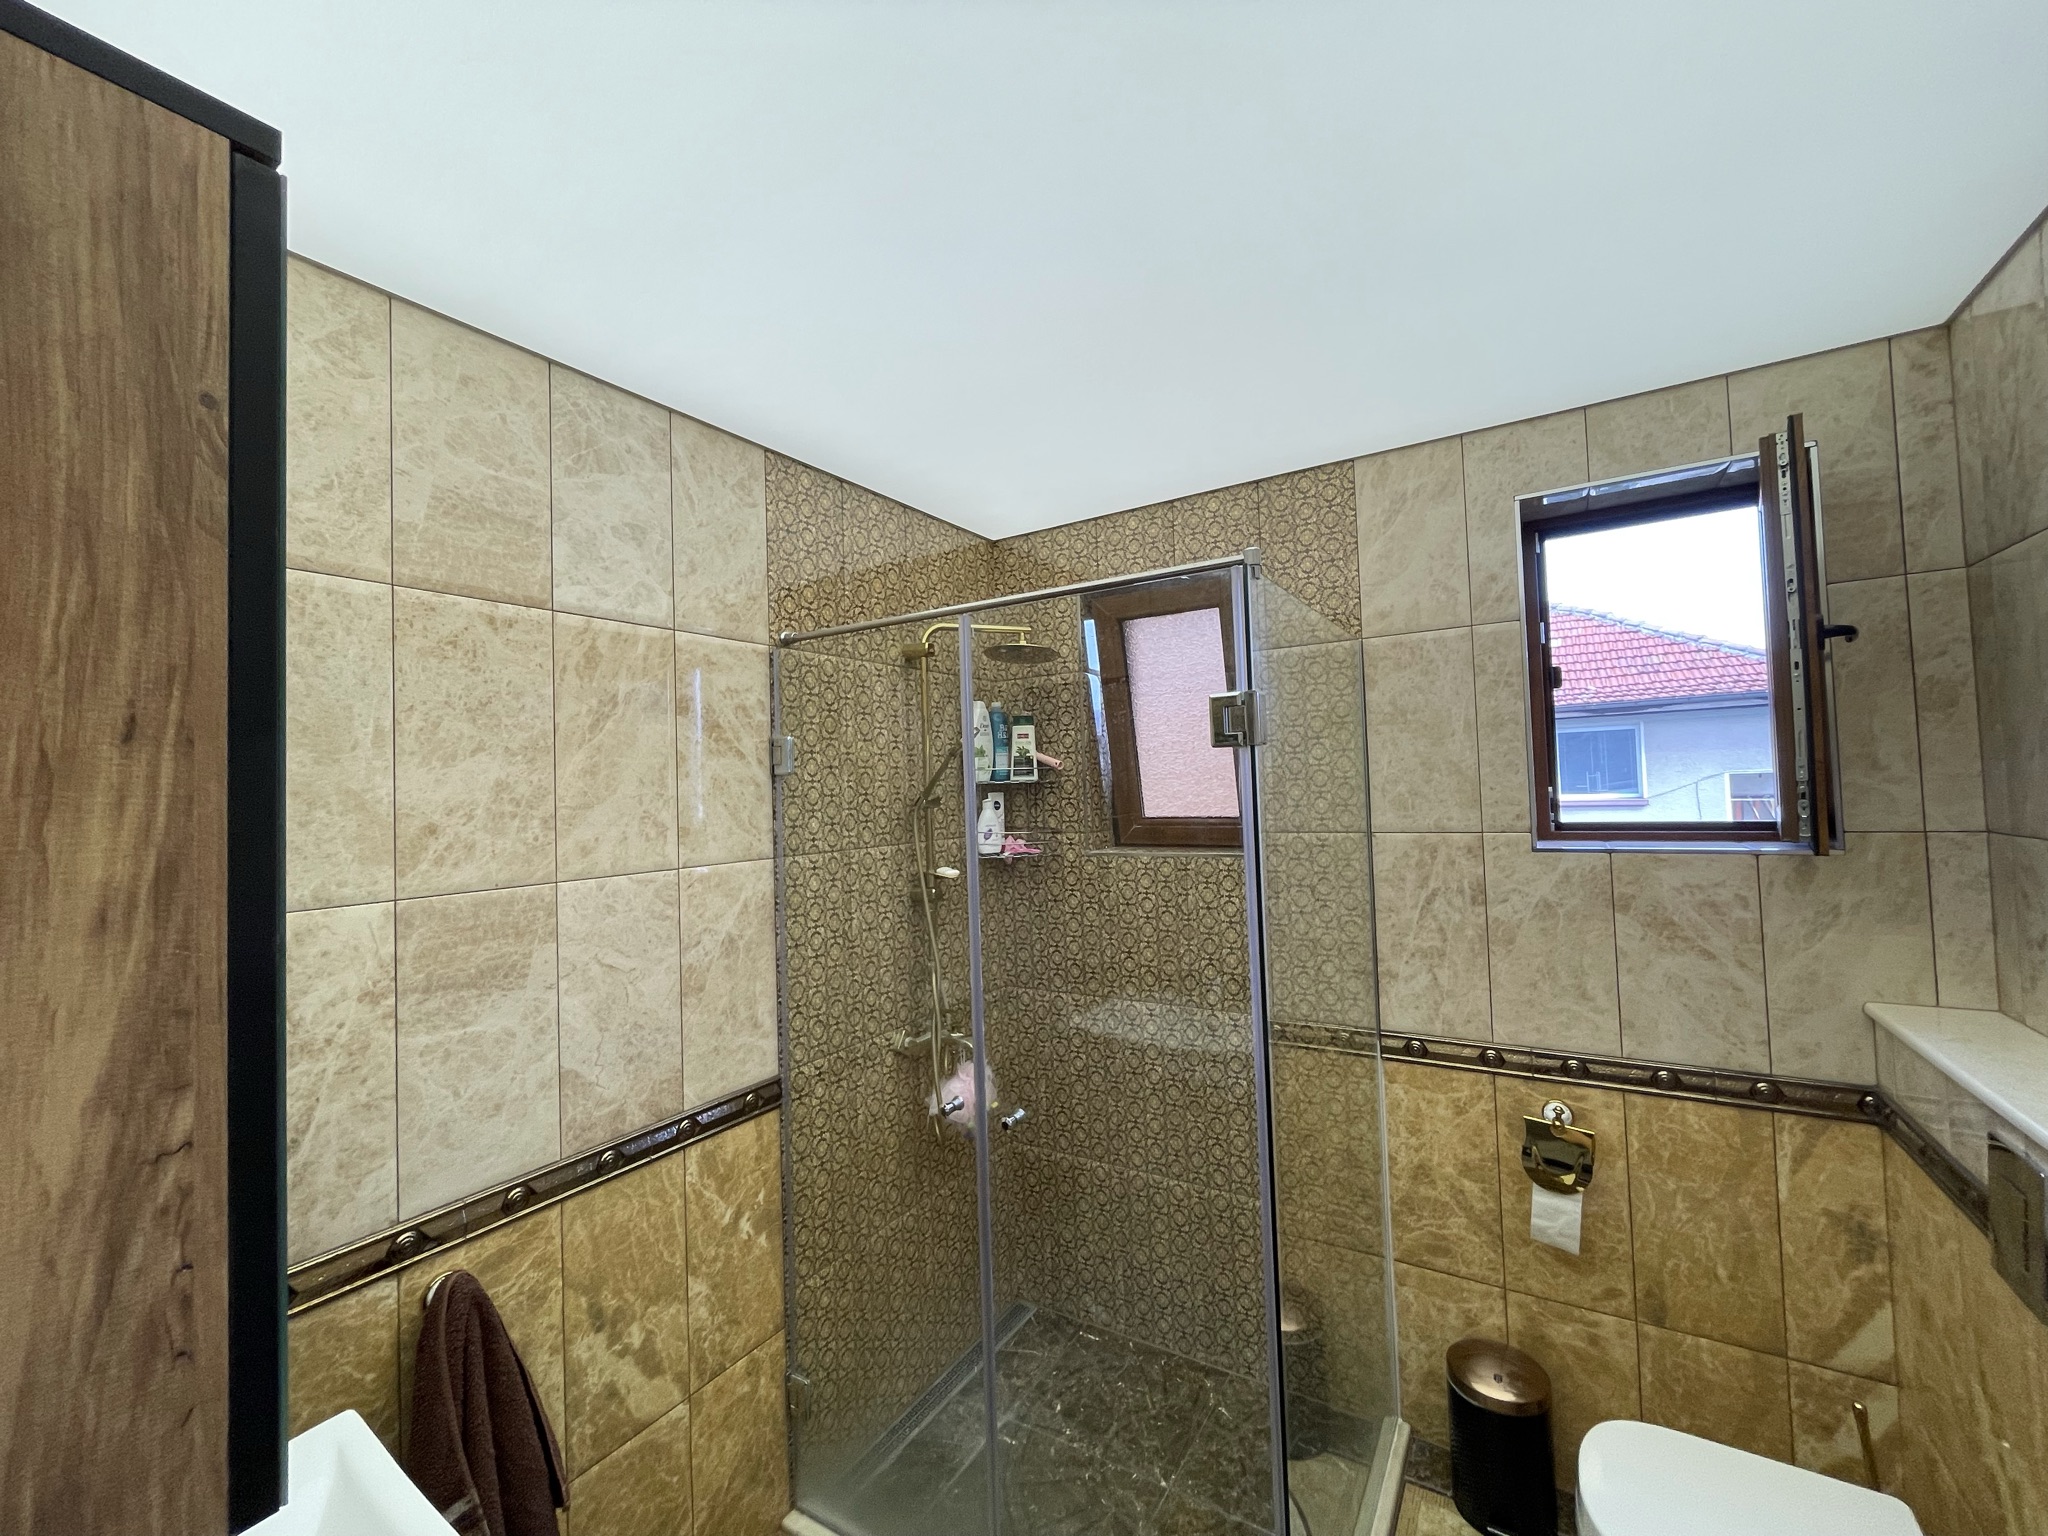 Опънати тавани в бани и мокри помещения